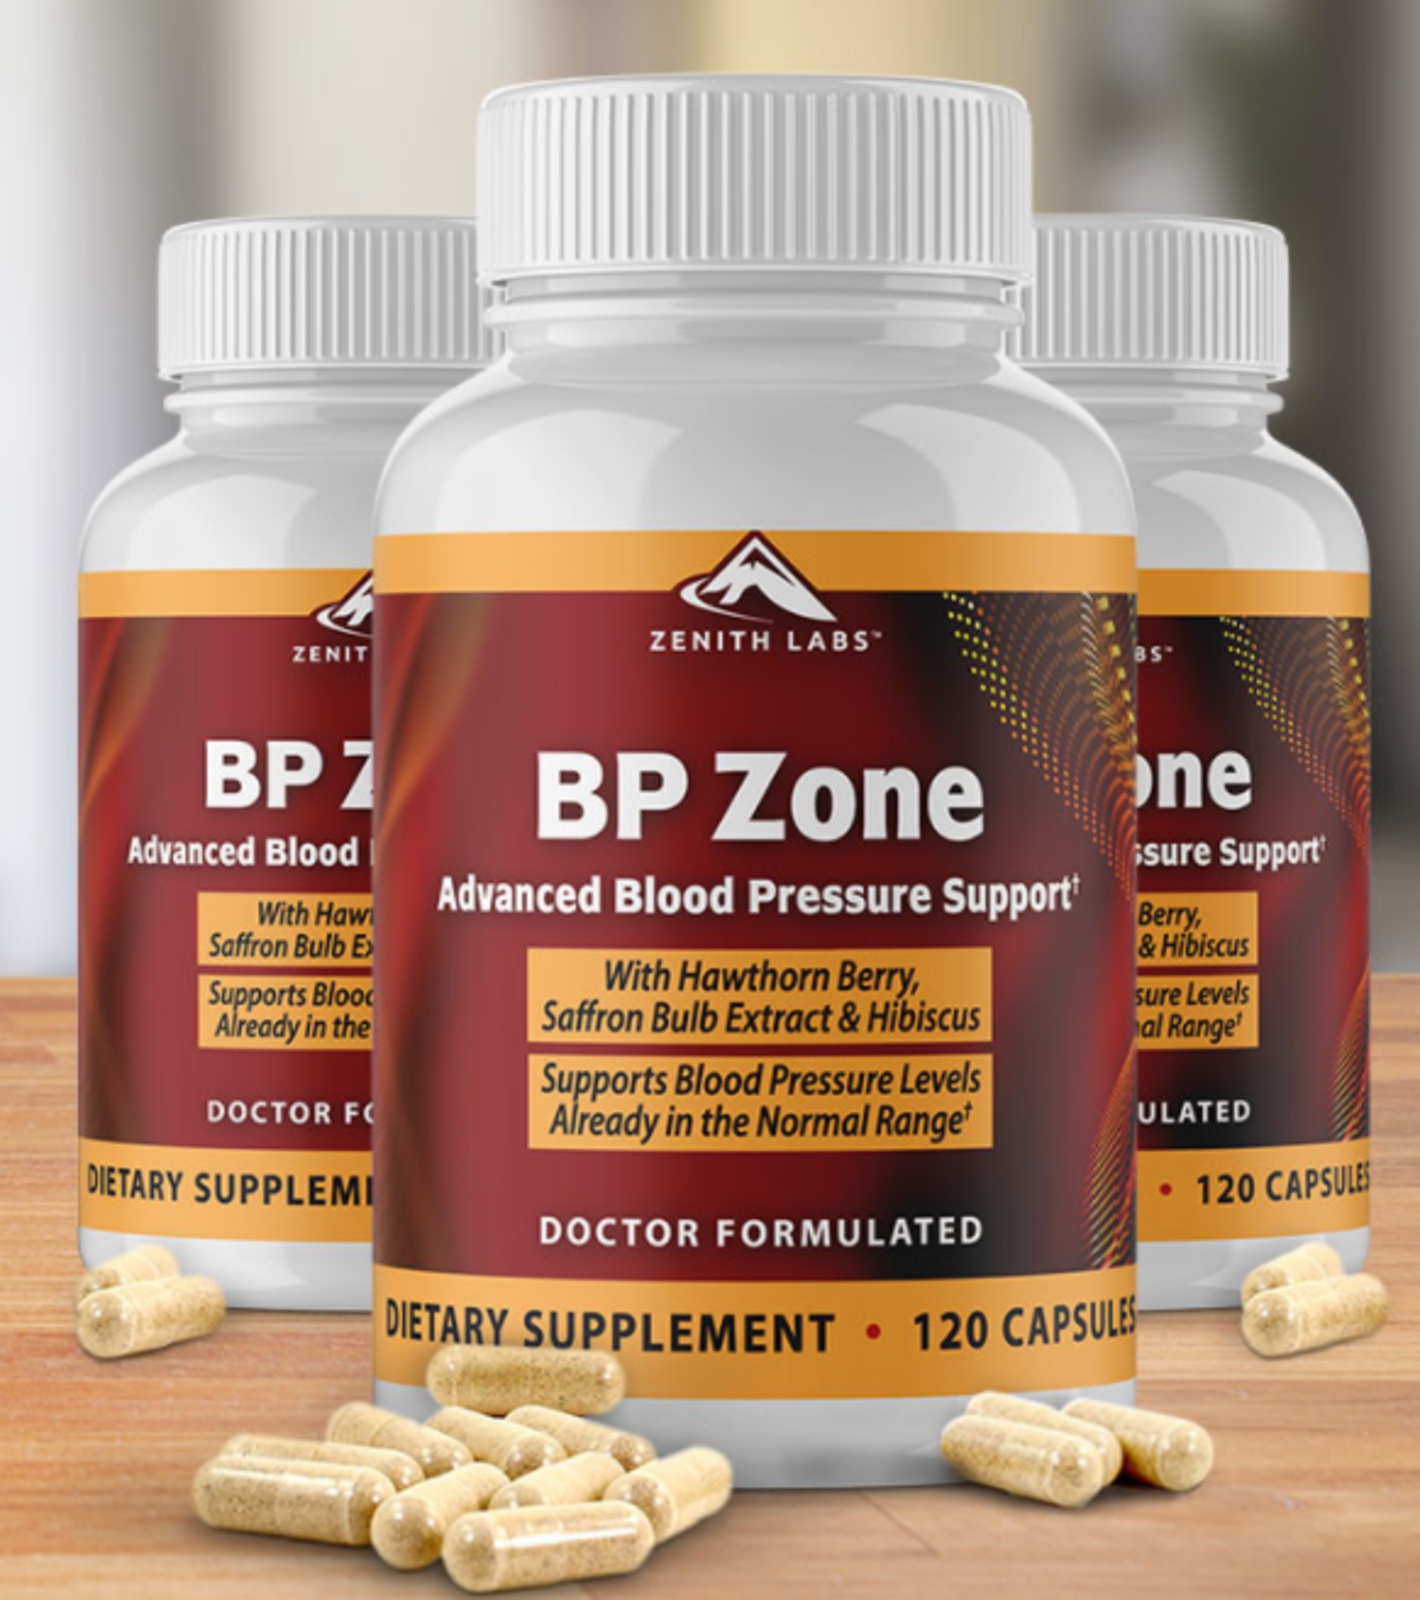 BP Zone Zenith Labs Reviews: 